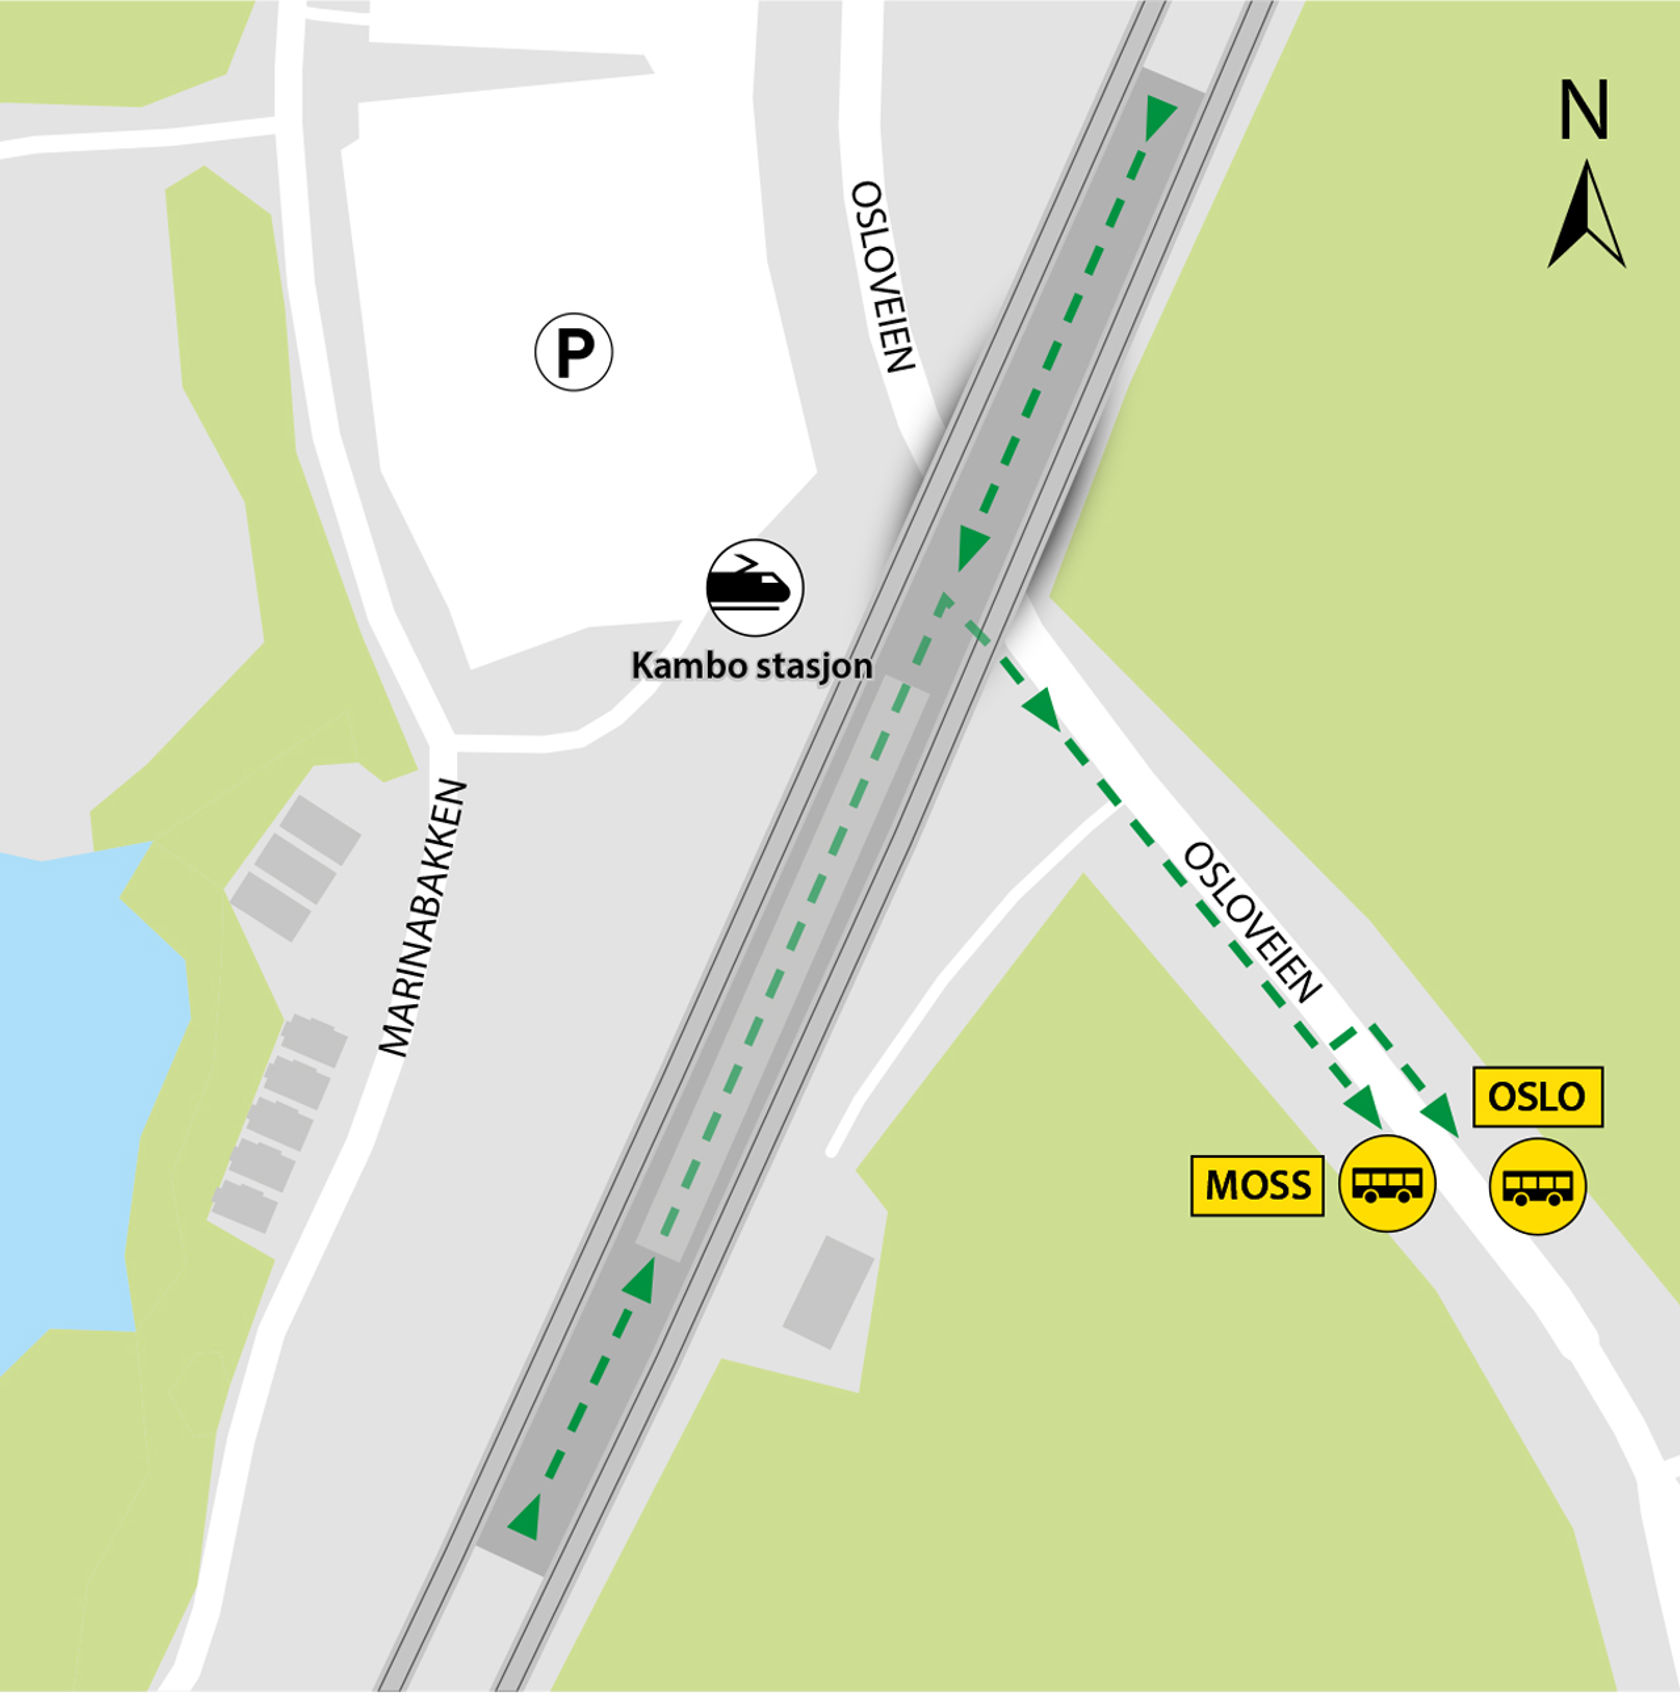 Kartet viser at bussene kjører fra bussholdeplassene Kambo stasjon i Osloveien.